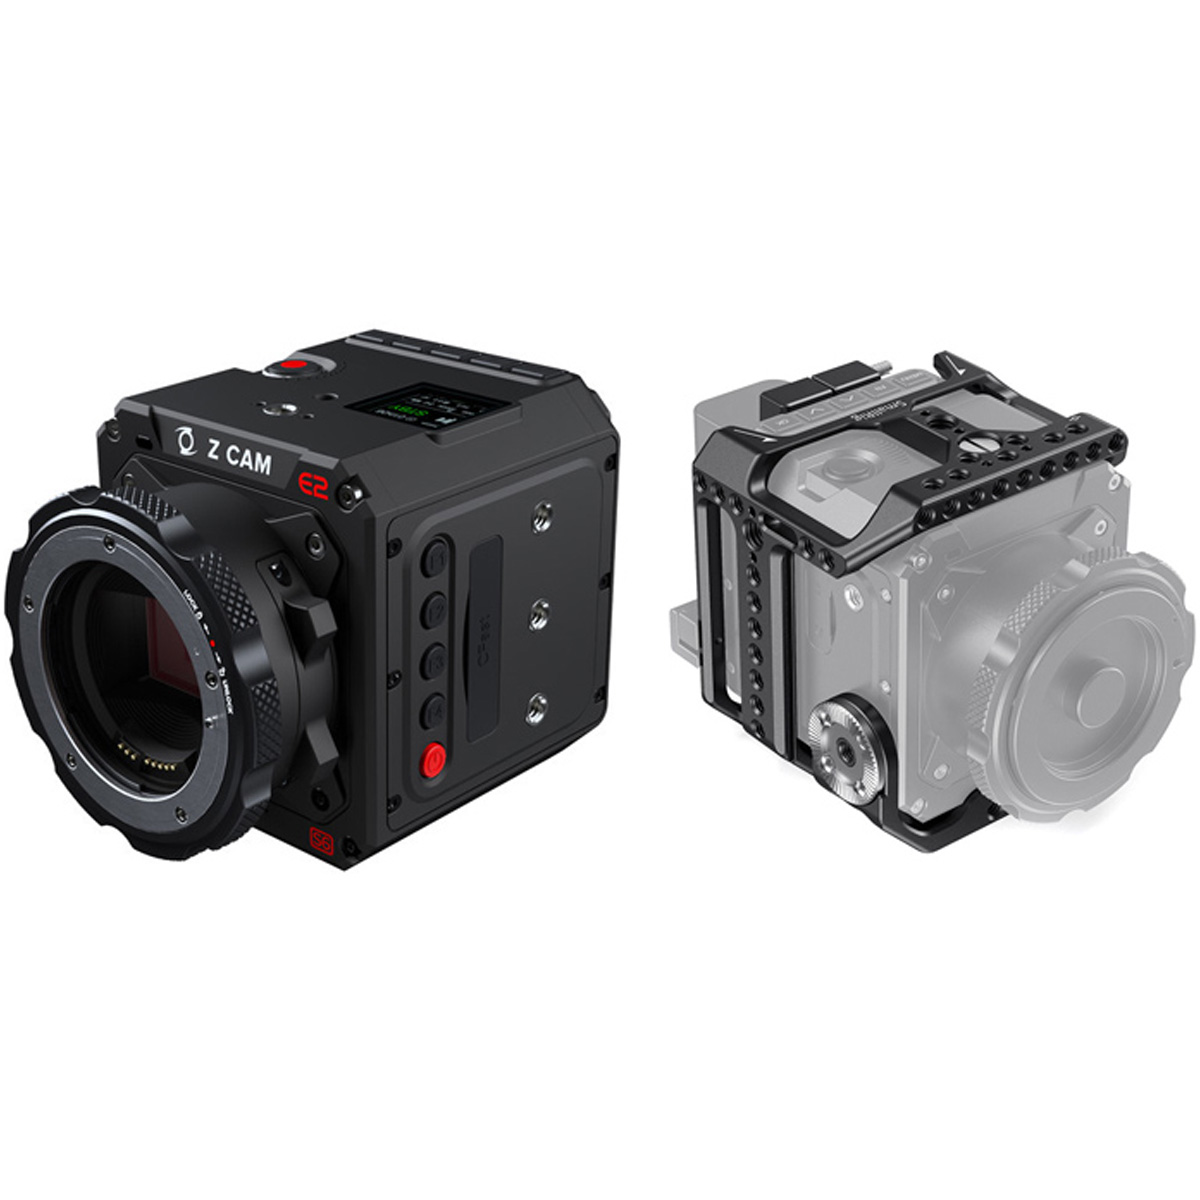 Verzending prieel maart Z CAM E2 S6 Super 35 6K Cinema Camera Kit (EF Mount) - The Camera Exchange